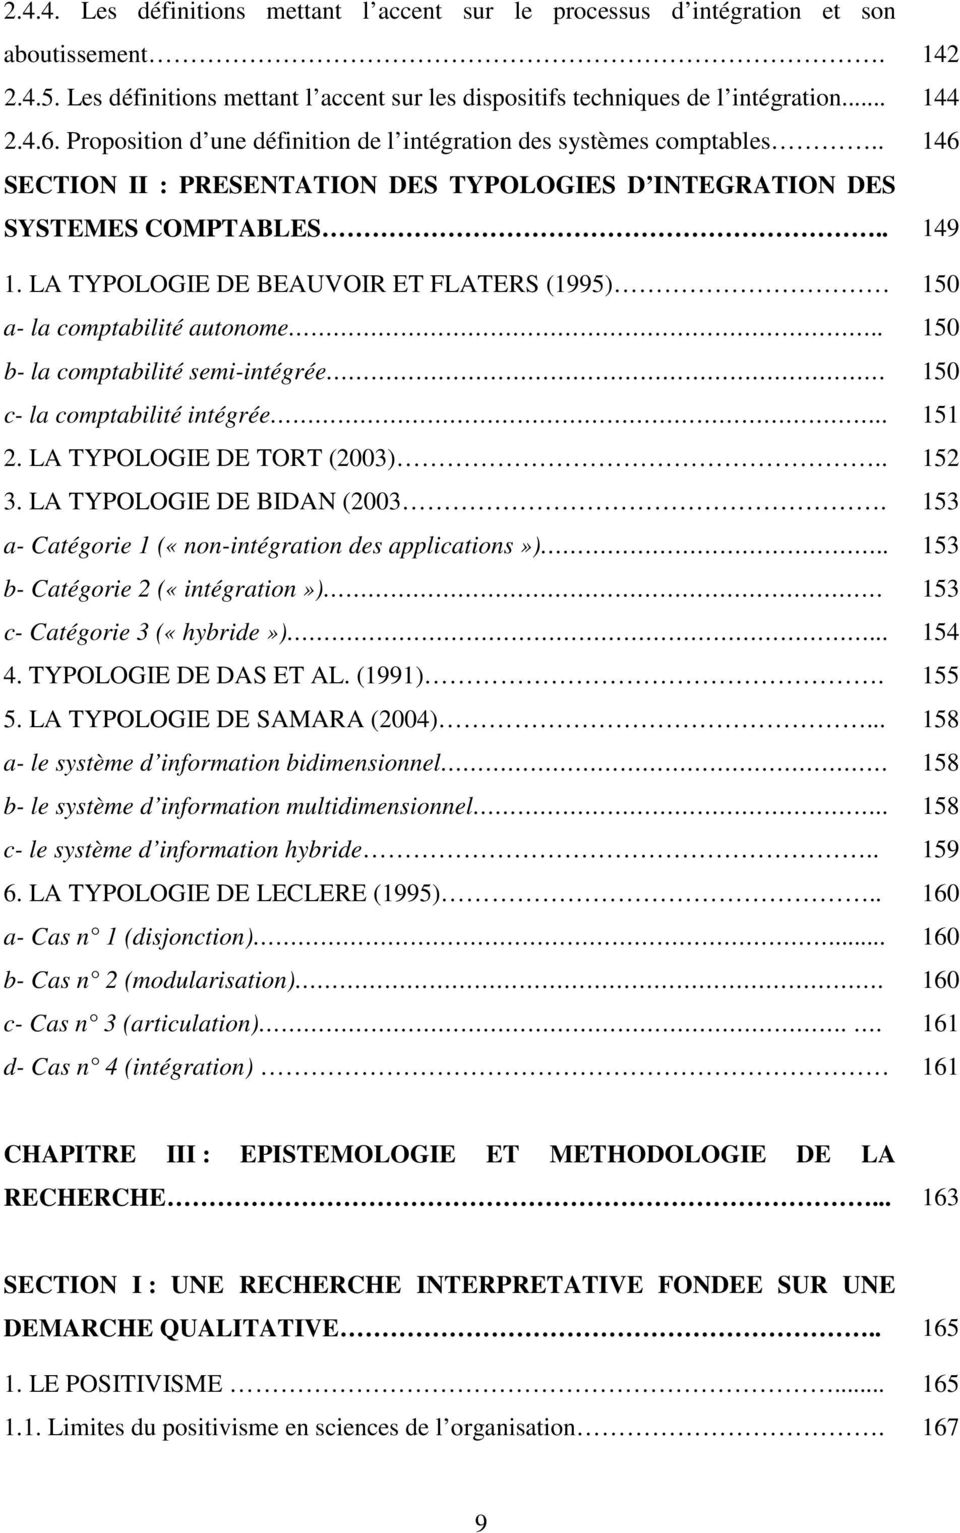 LA TYPOLOGIE DE BEAUVOIR ET FLATERS (1995) 150 a- la comptabilité autonome.. 150 b- la comptabilité semi-intégrée 150 c- la comptabilité intégrée.. 151 2. LA TYPOLOGIE DE TORT (2003).. 152 3.